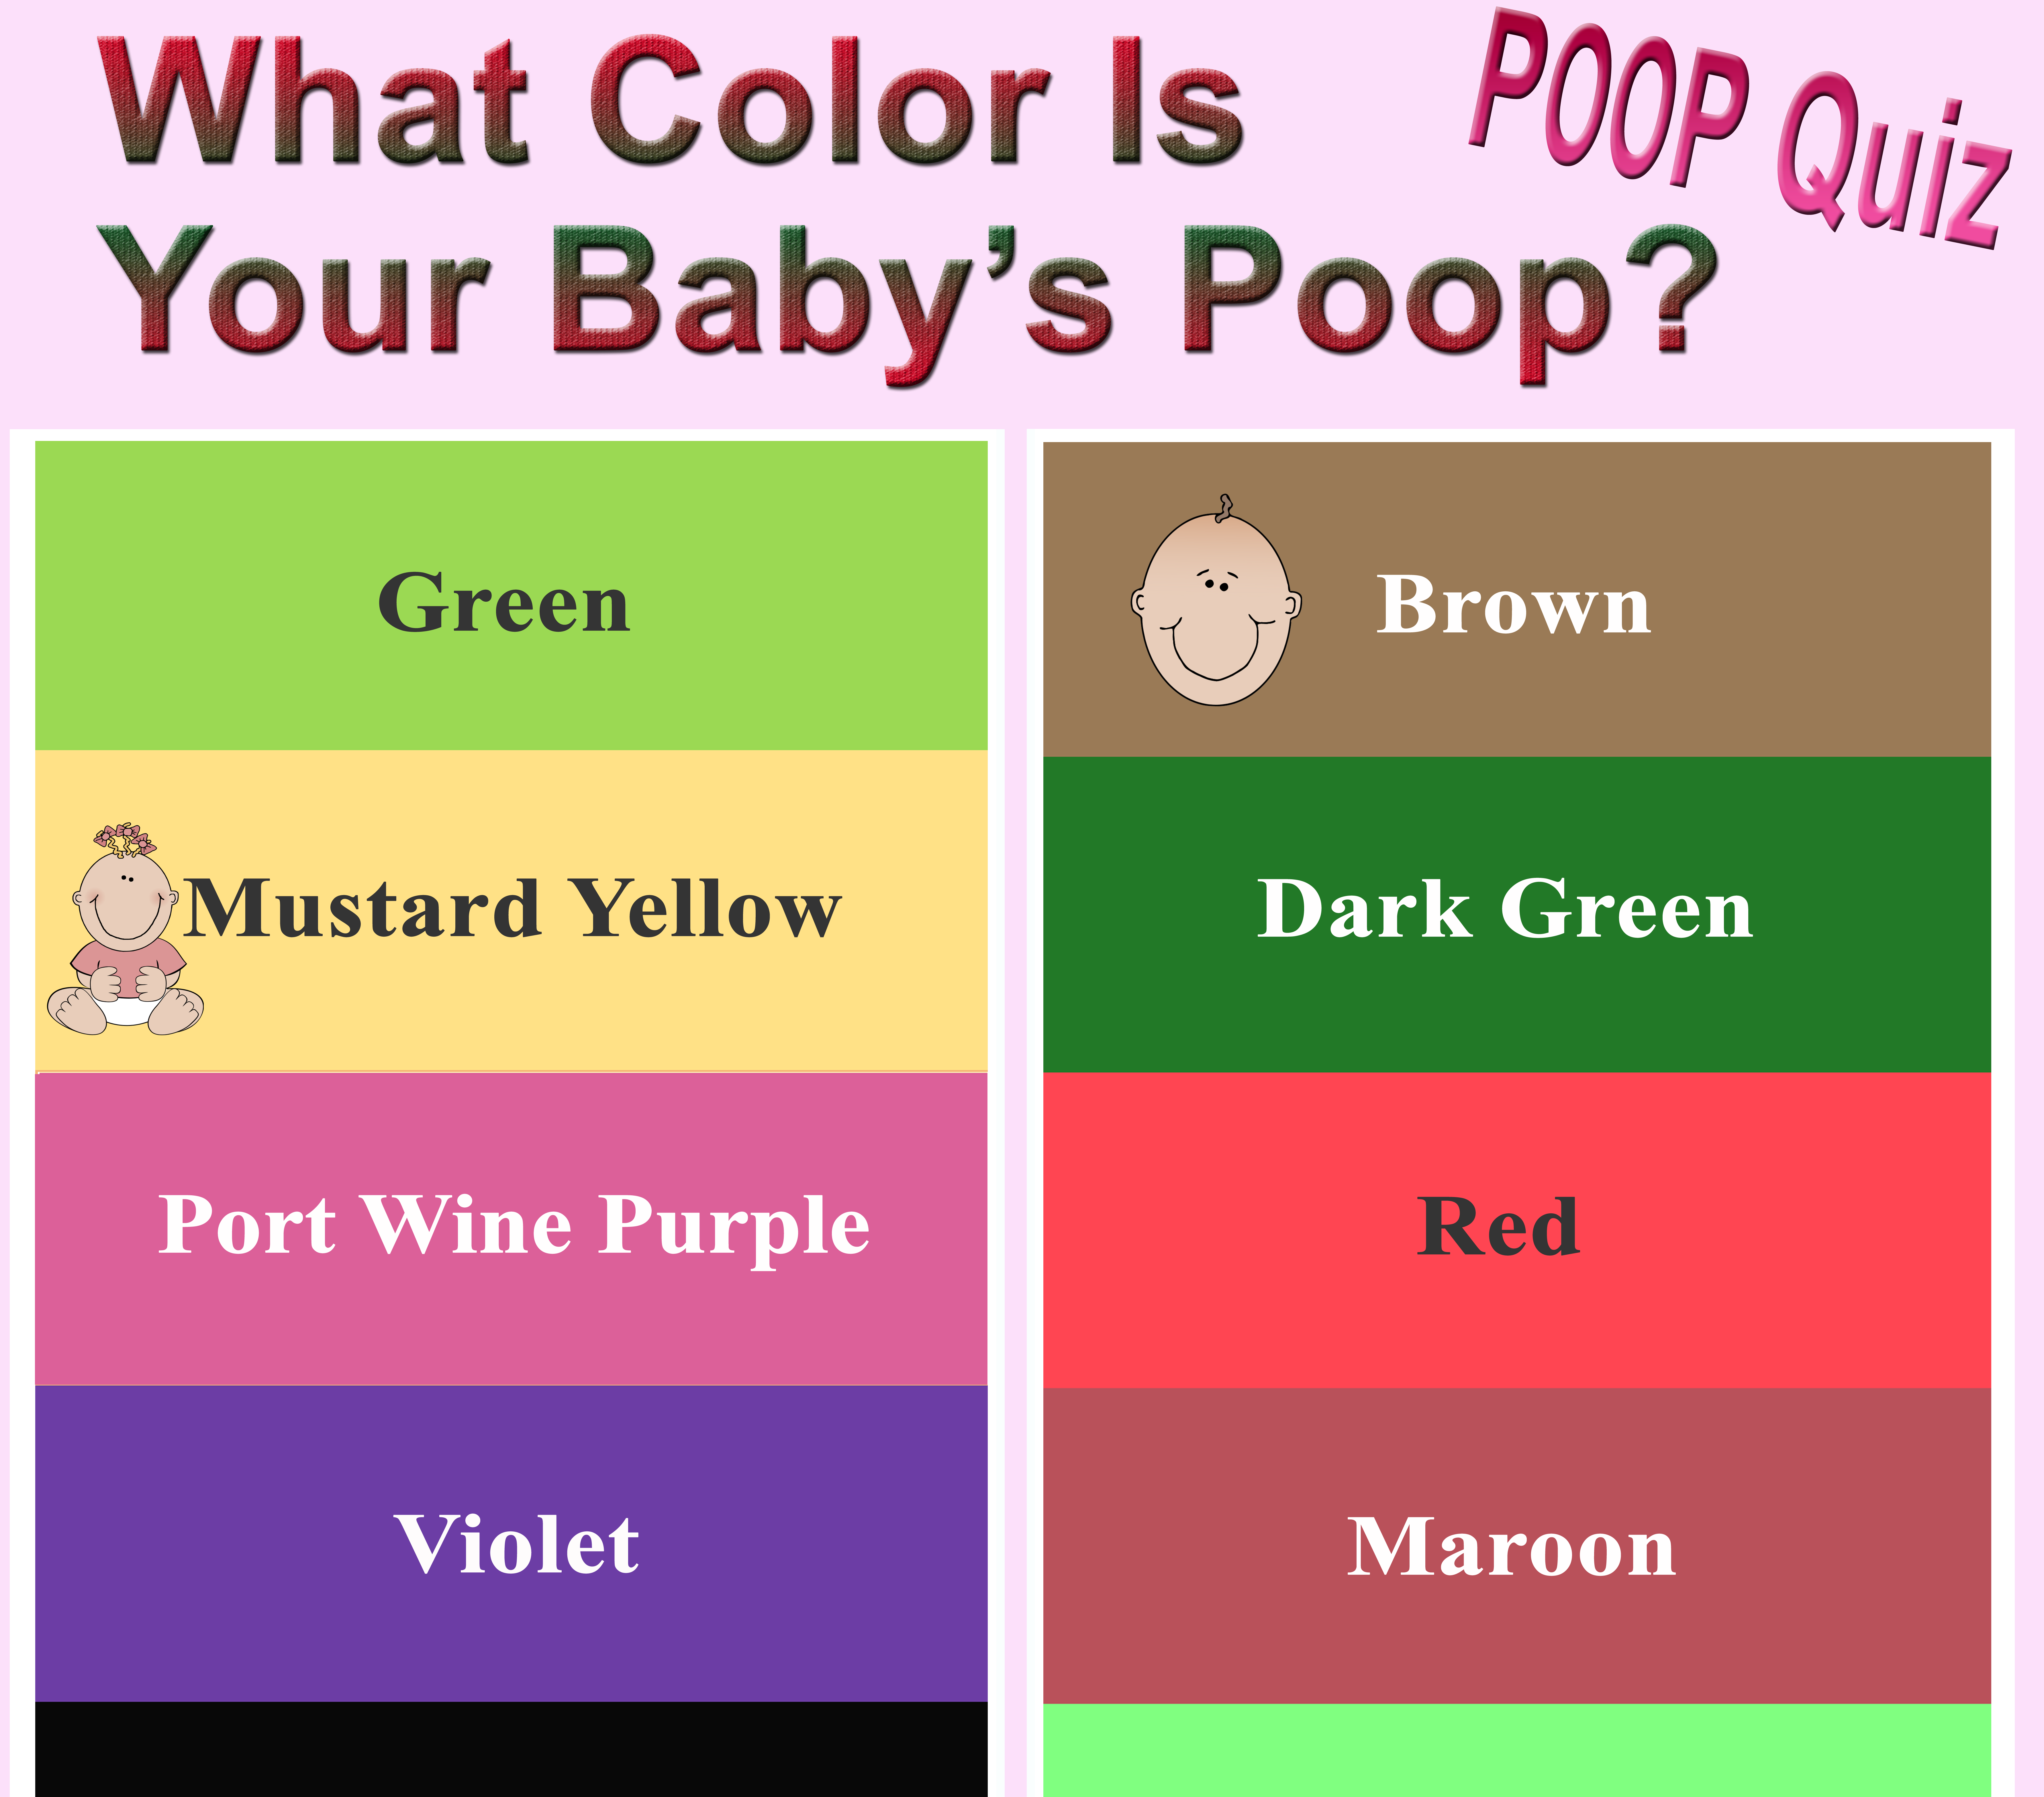 Is purple poop rare?